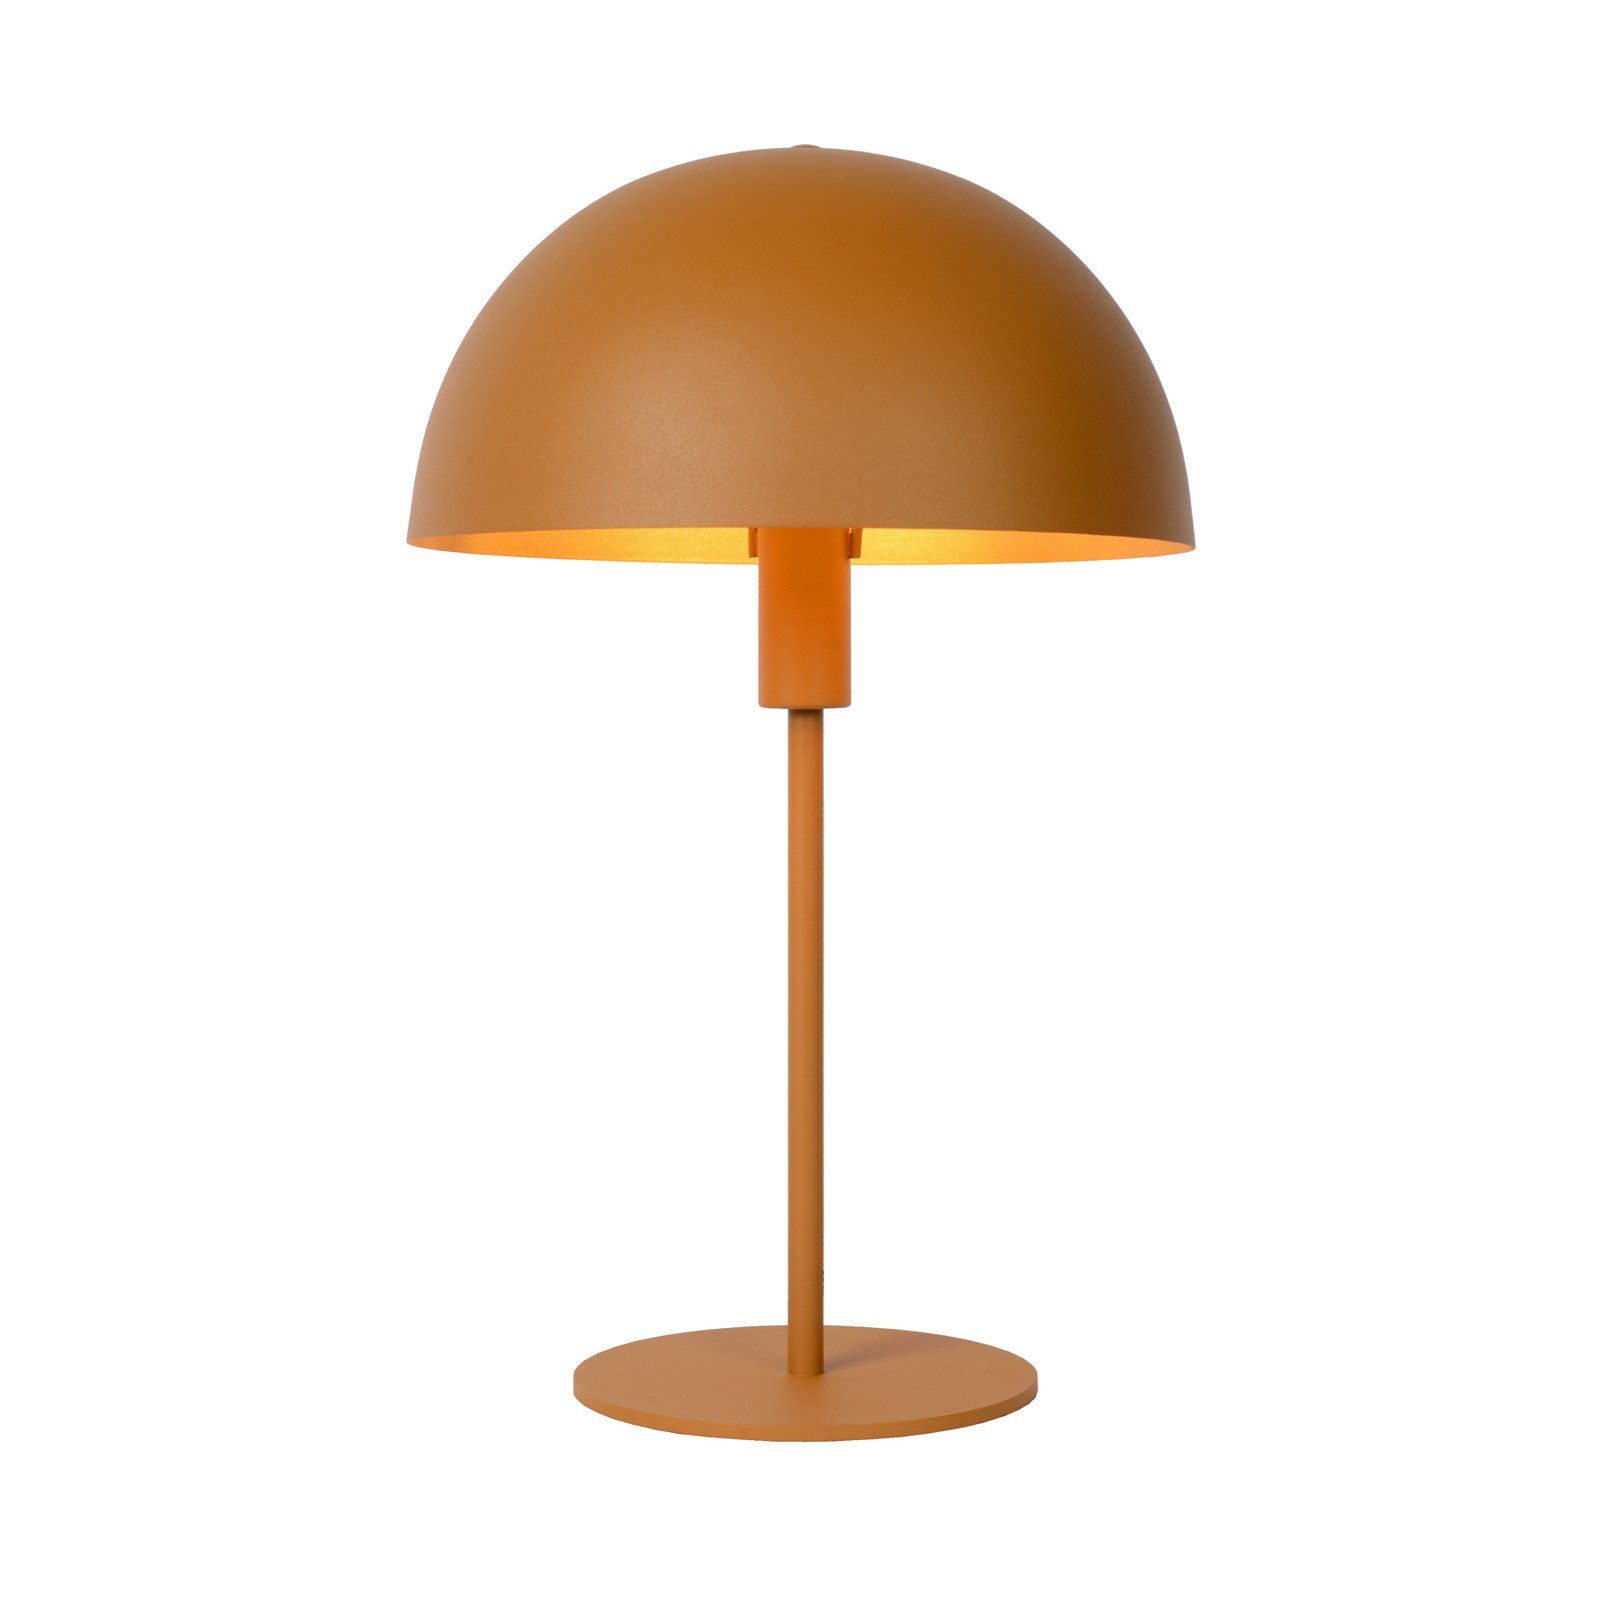 Siemon bordslampa i stål, Ø 25 cm, ockragul